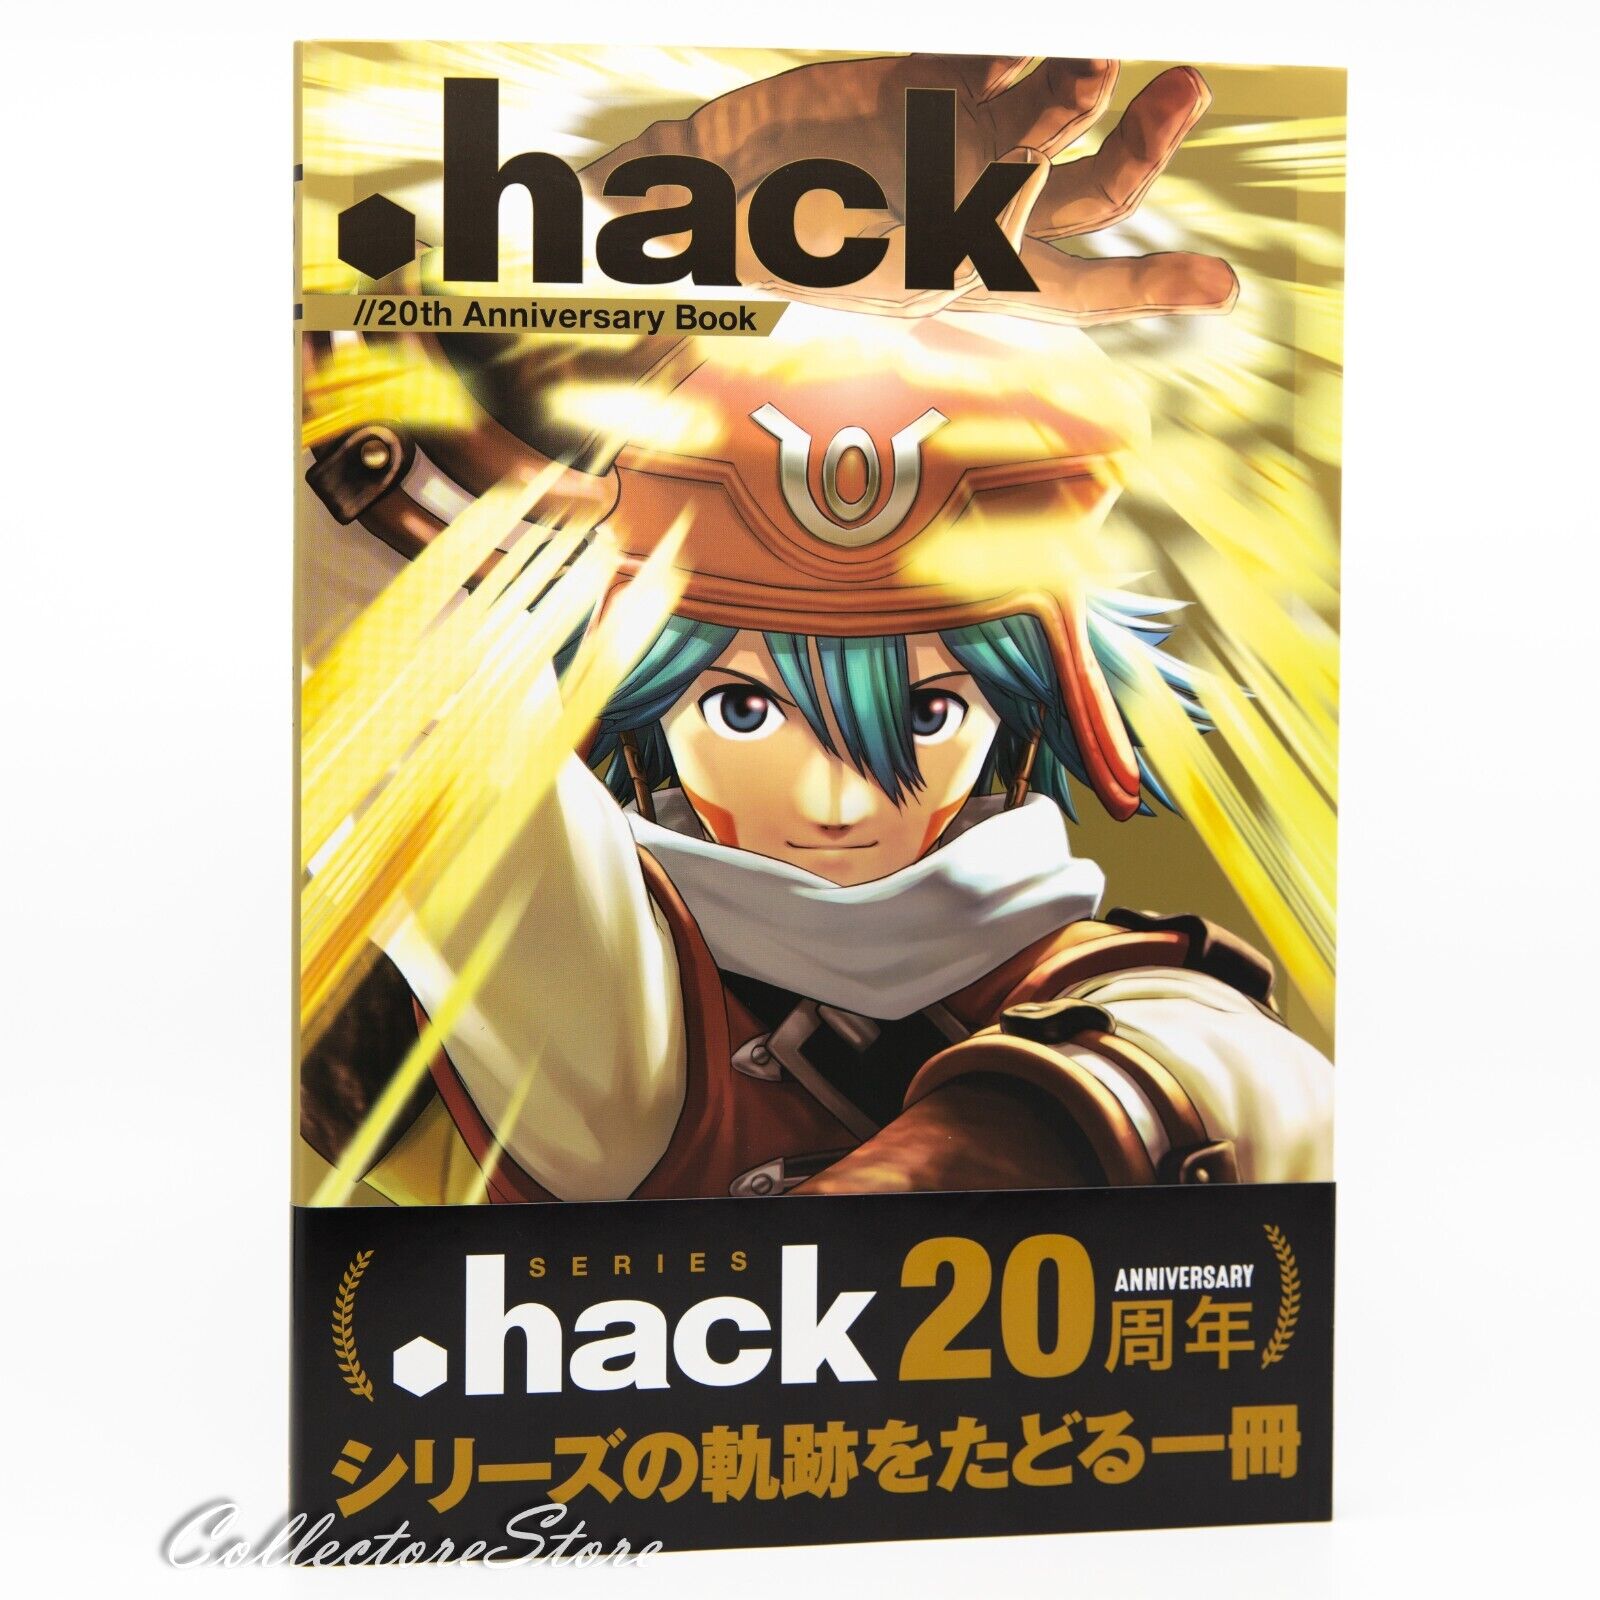 .hack//20th Anniversary Book (AIR/DHL)